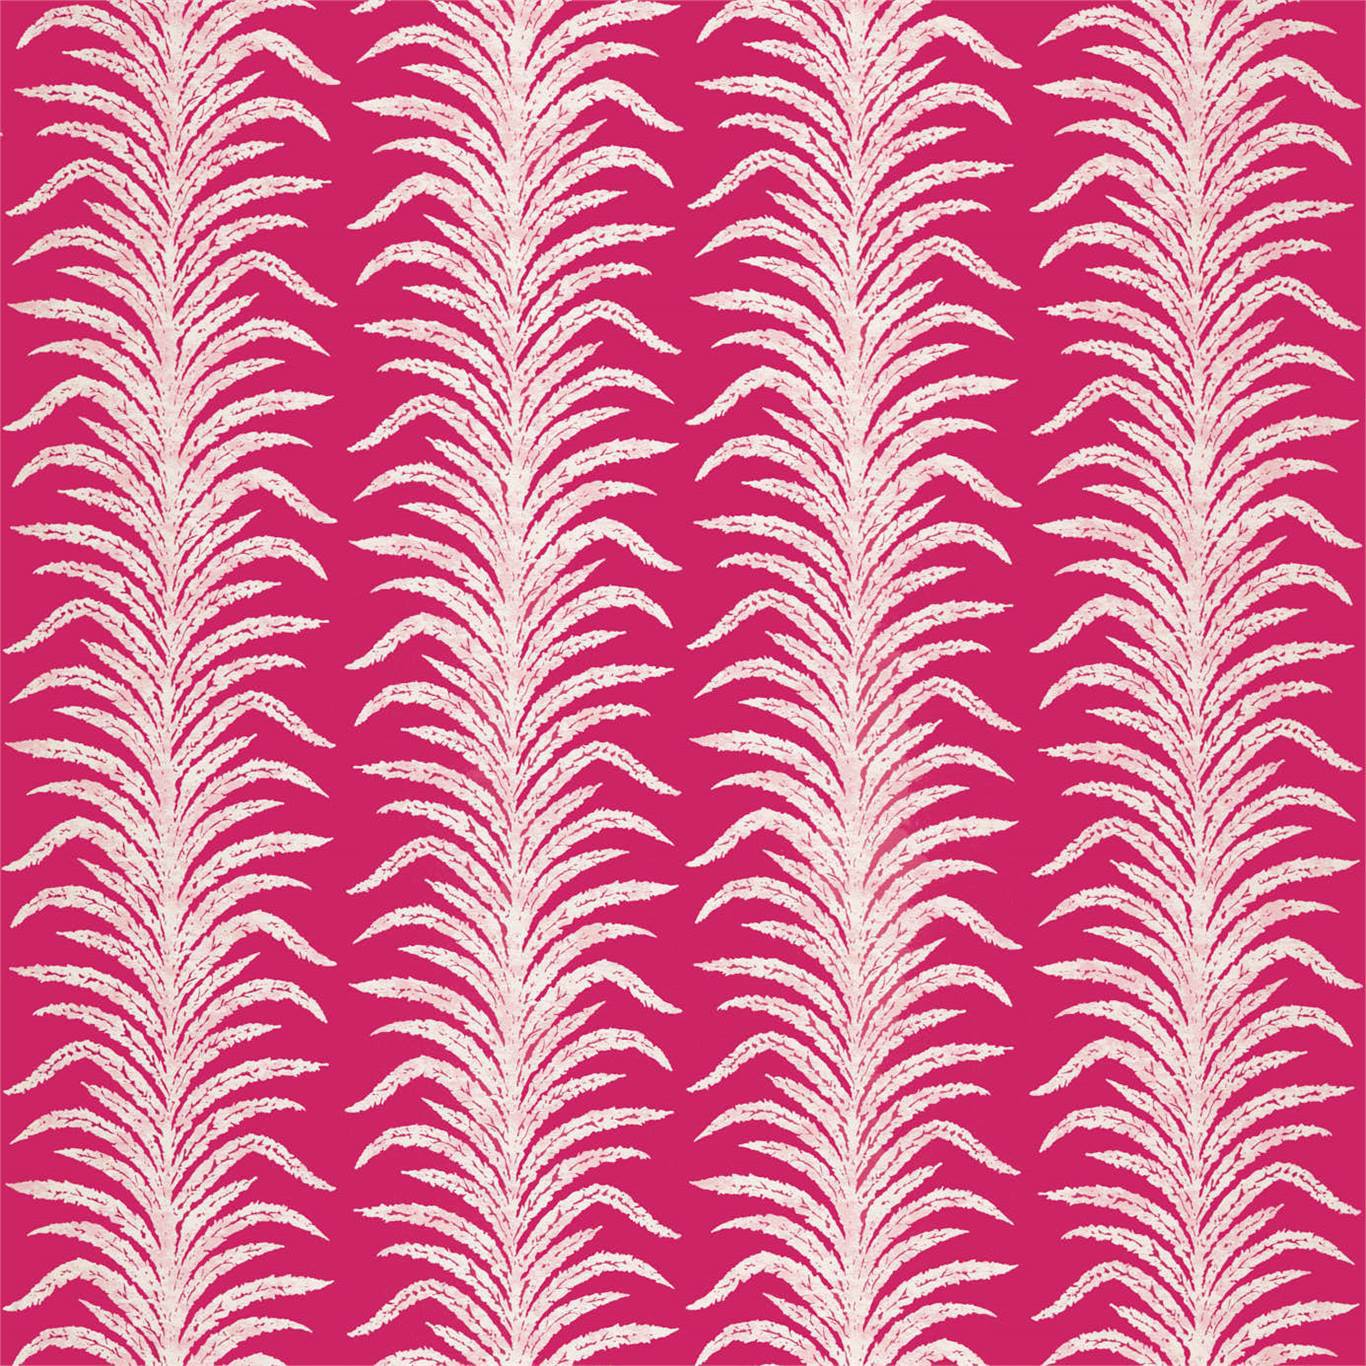 Tree Fern Weave Rhodera Fabric by SAN